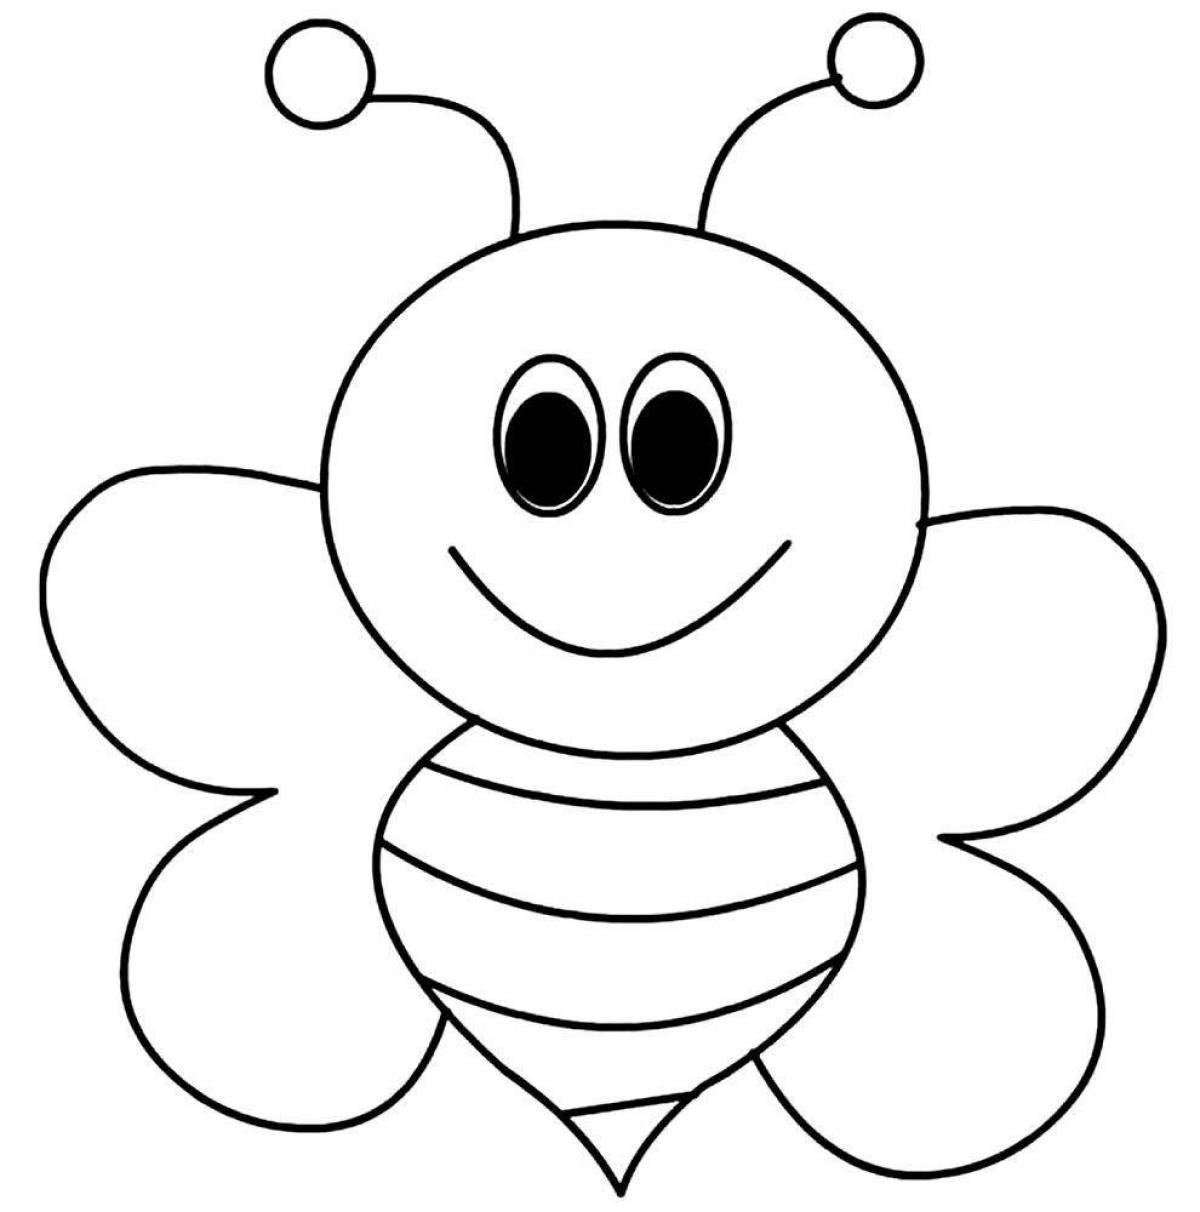 Трафарет детям 4 года. Пчела раскраска. Раскраска пчёлка для детей. Пчела раскраска для детей. Пчелка раскраска для малышей.